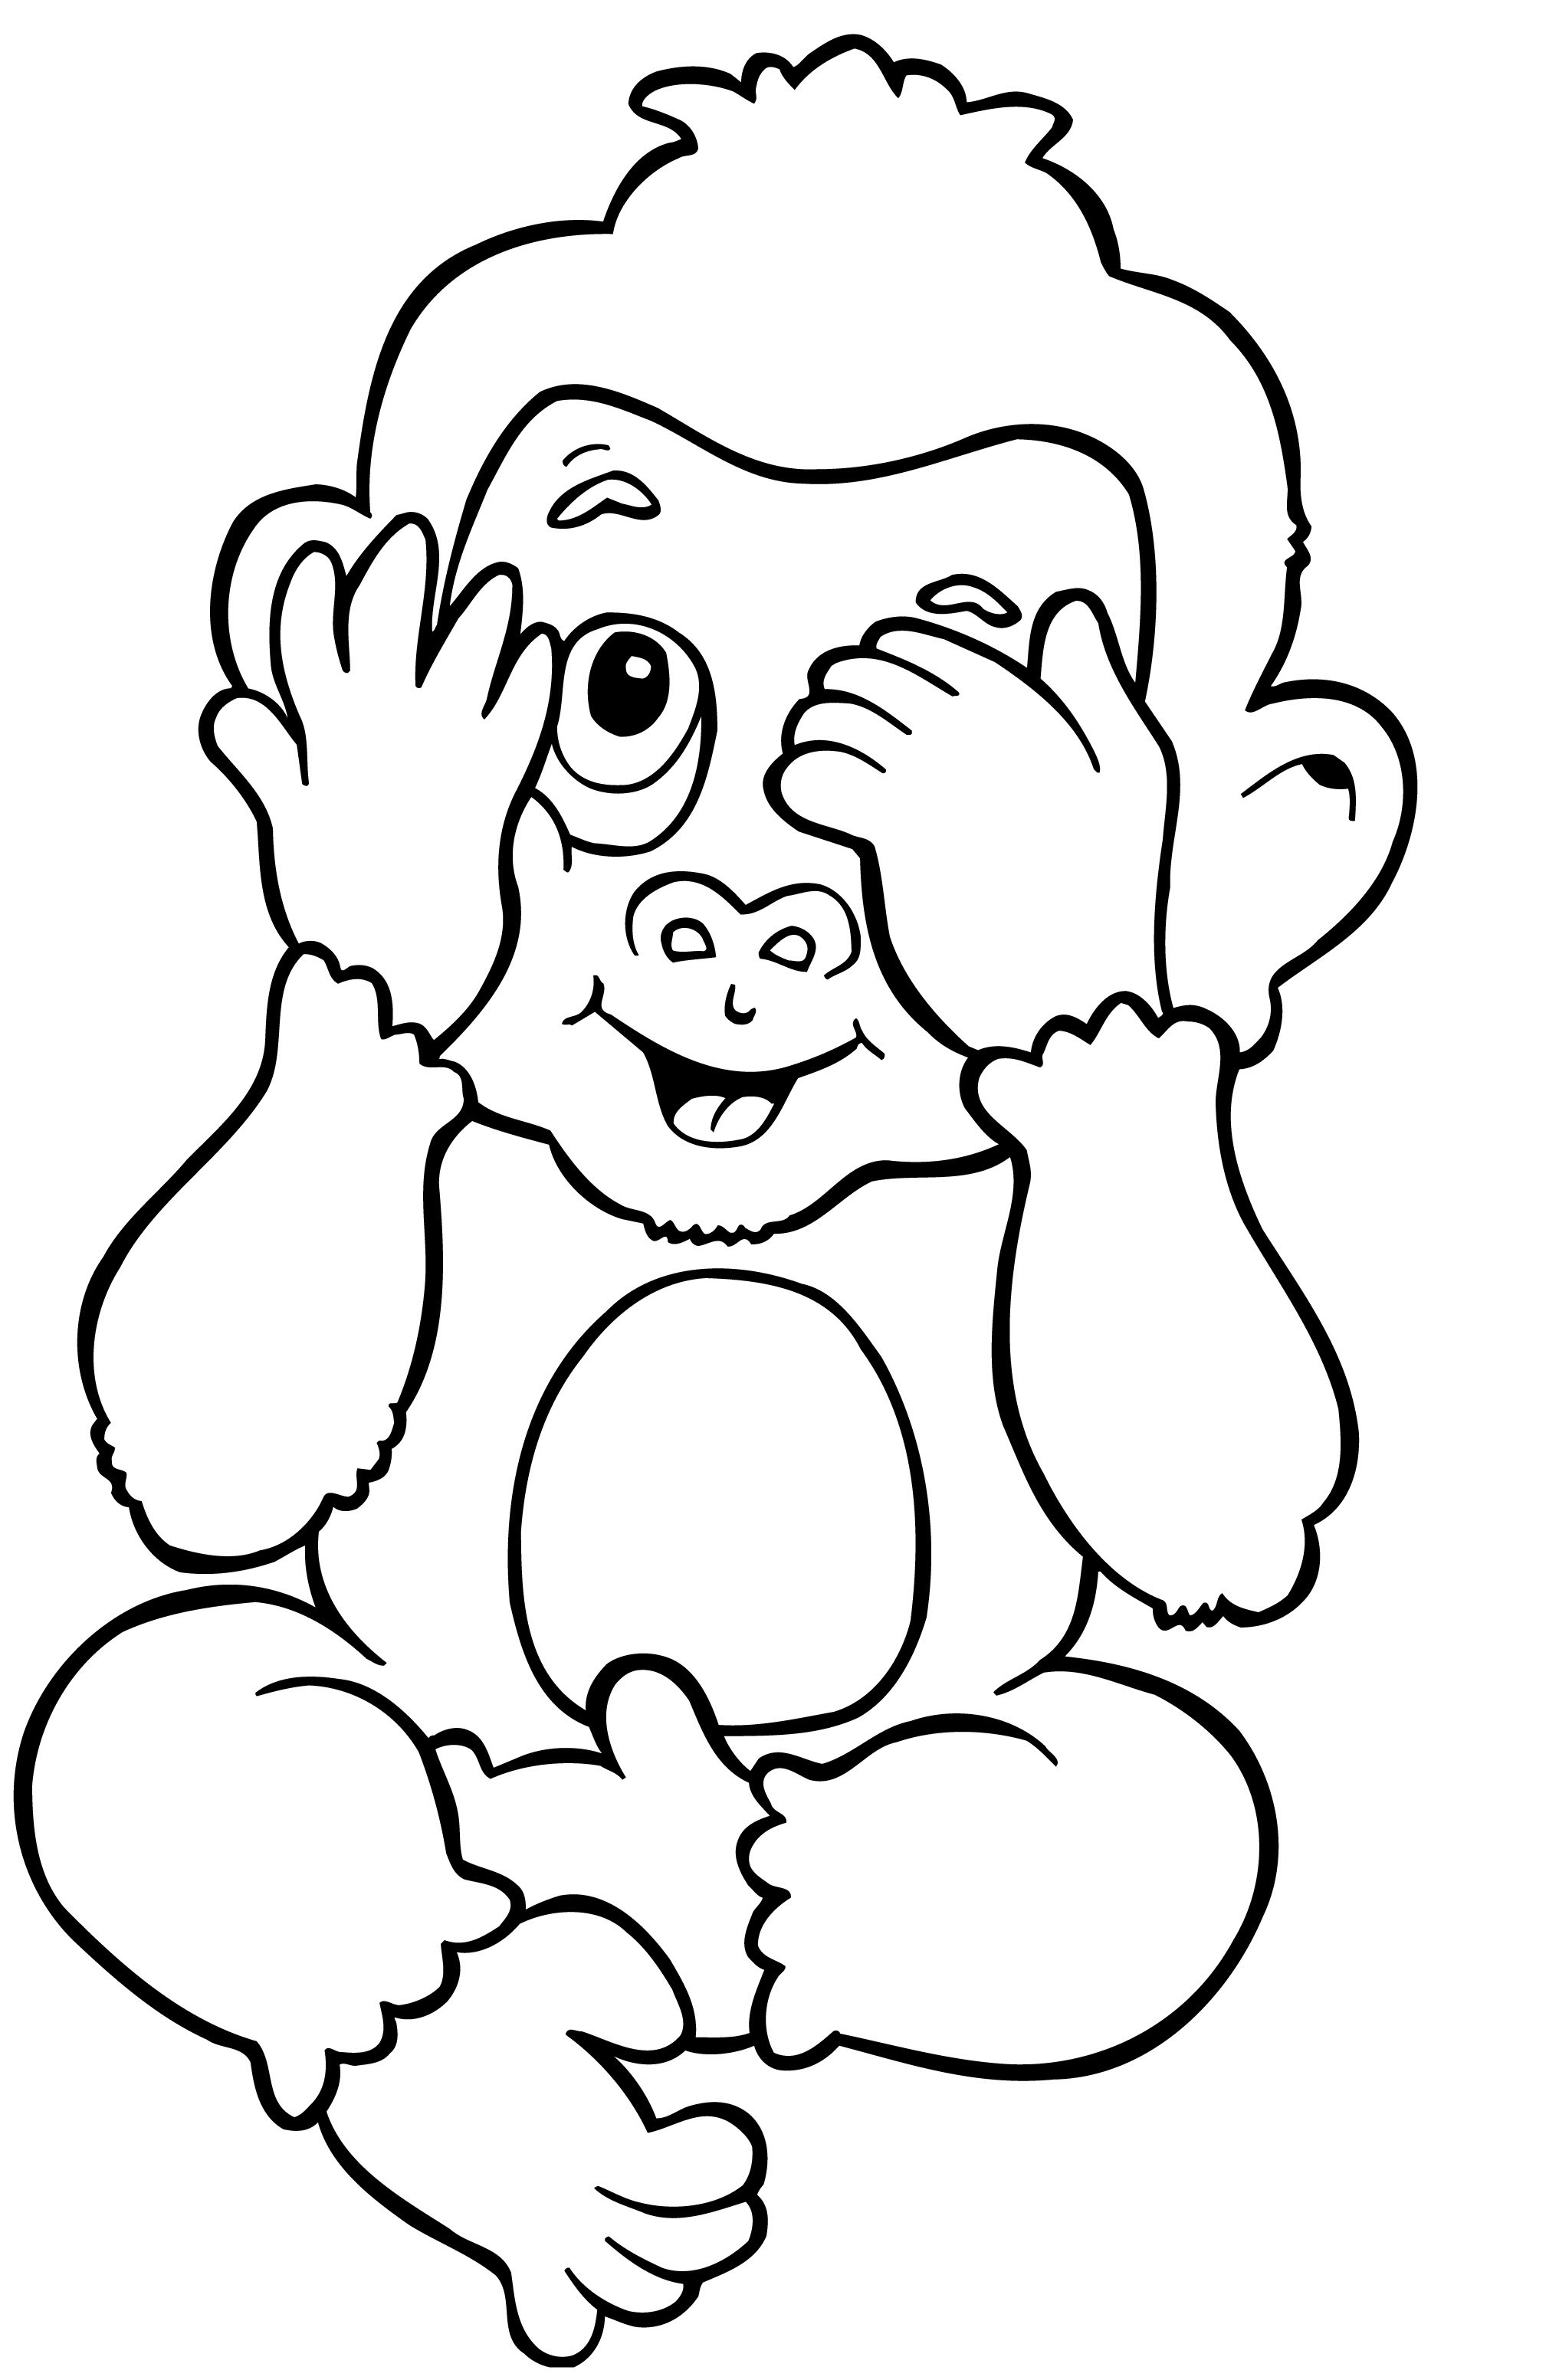 Tranh tô màu con khỉ lấy tay che mặt